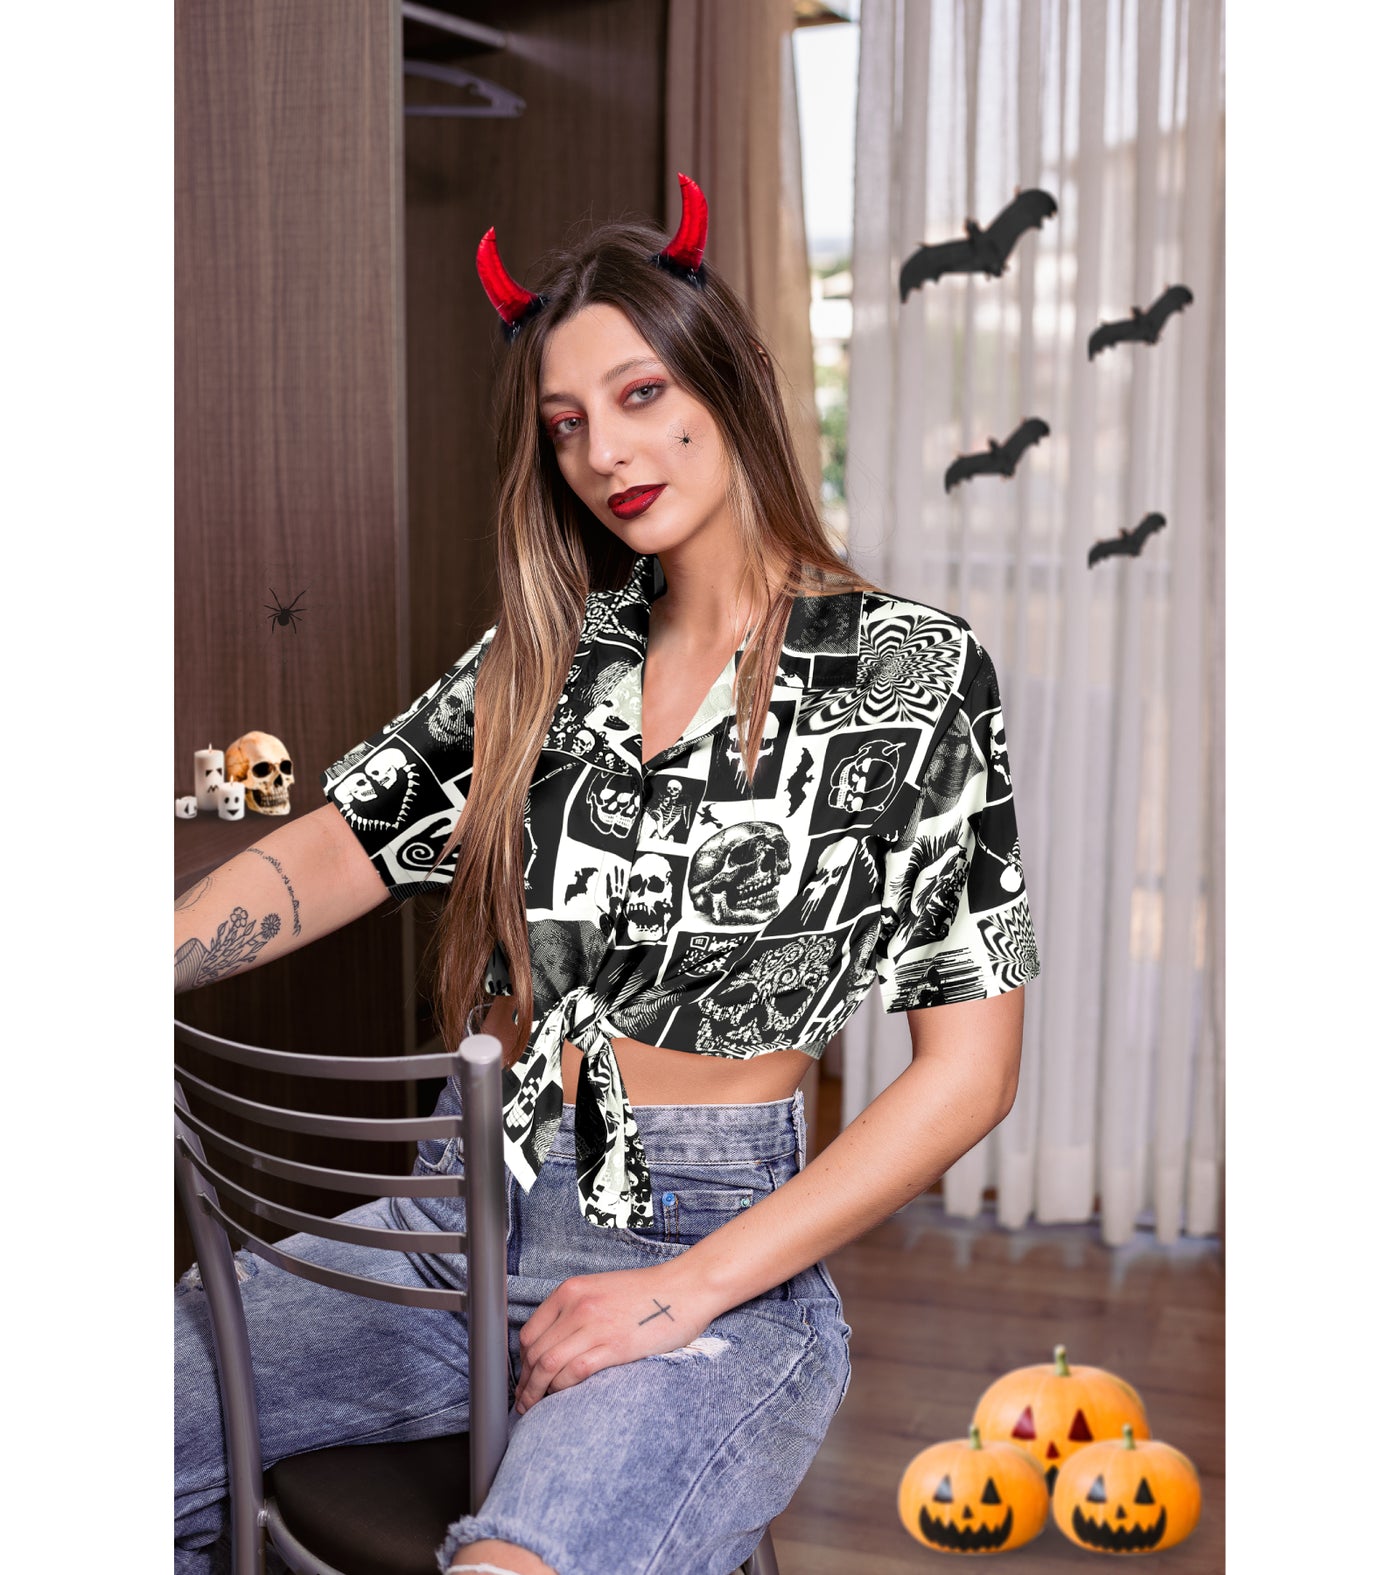 Scary Skull Halloween Shirt For Women